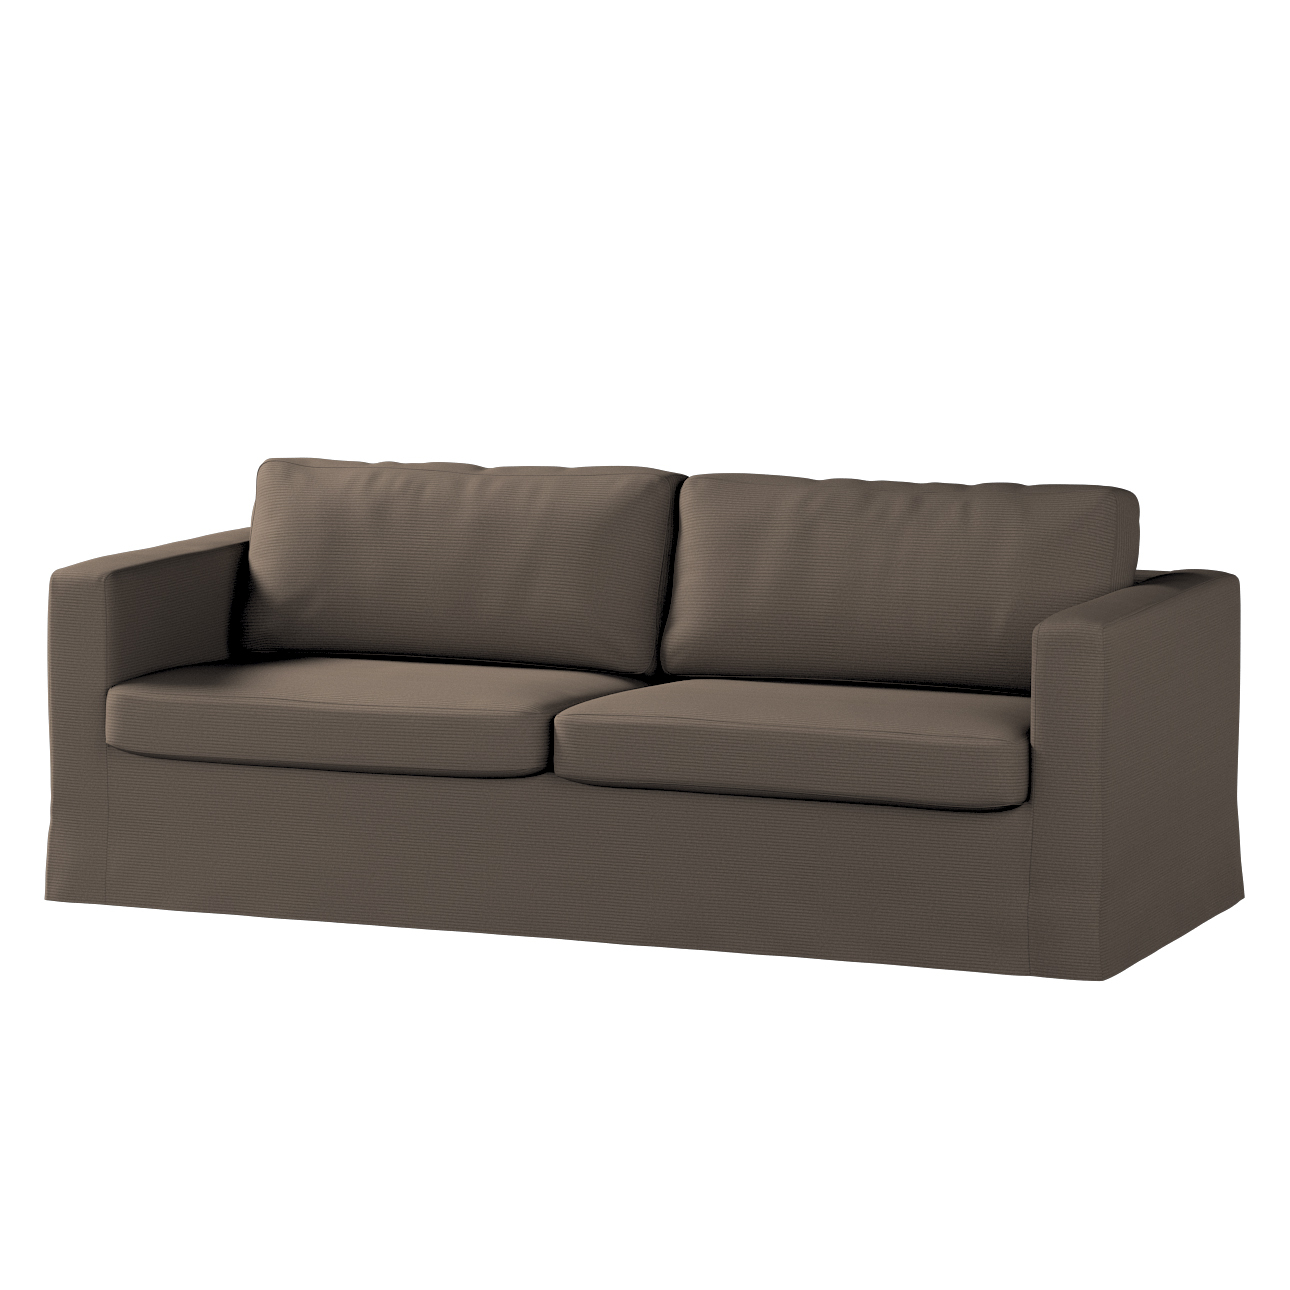 Bezug für Karlstad 3-Sitzer Sofa nicht ausklappbar, lang, braun, Bezug für günstig online kaufen